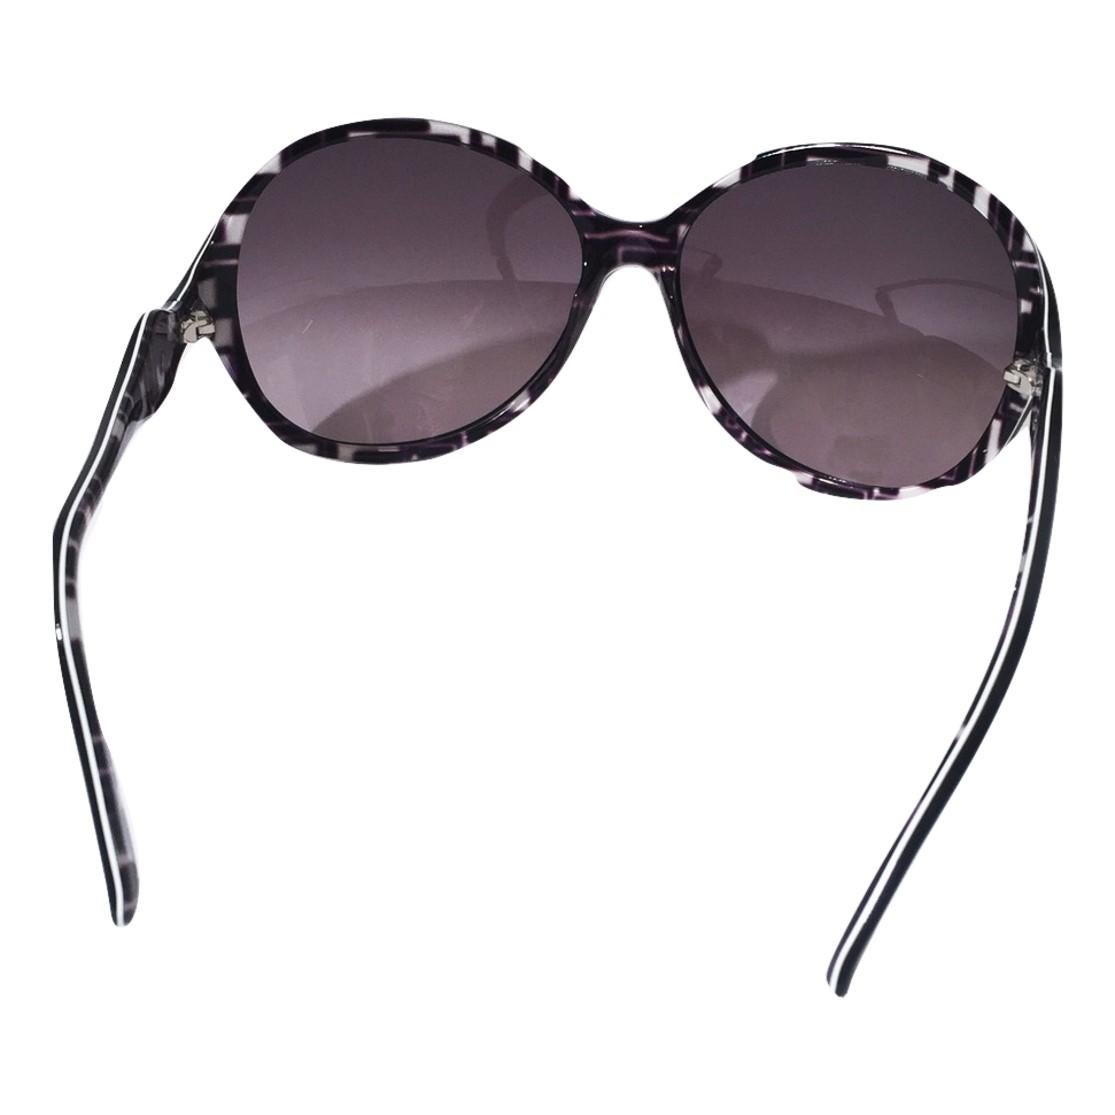 New Emilio Pucci Black Logo Sunglasses With Case & Box 2